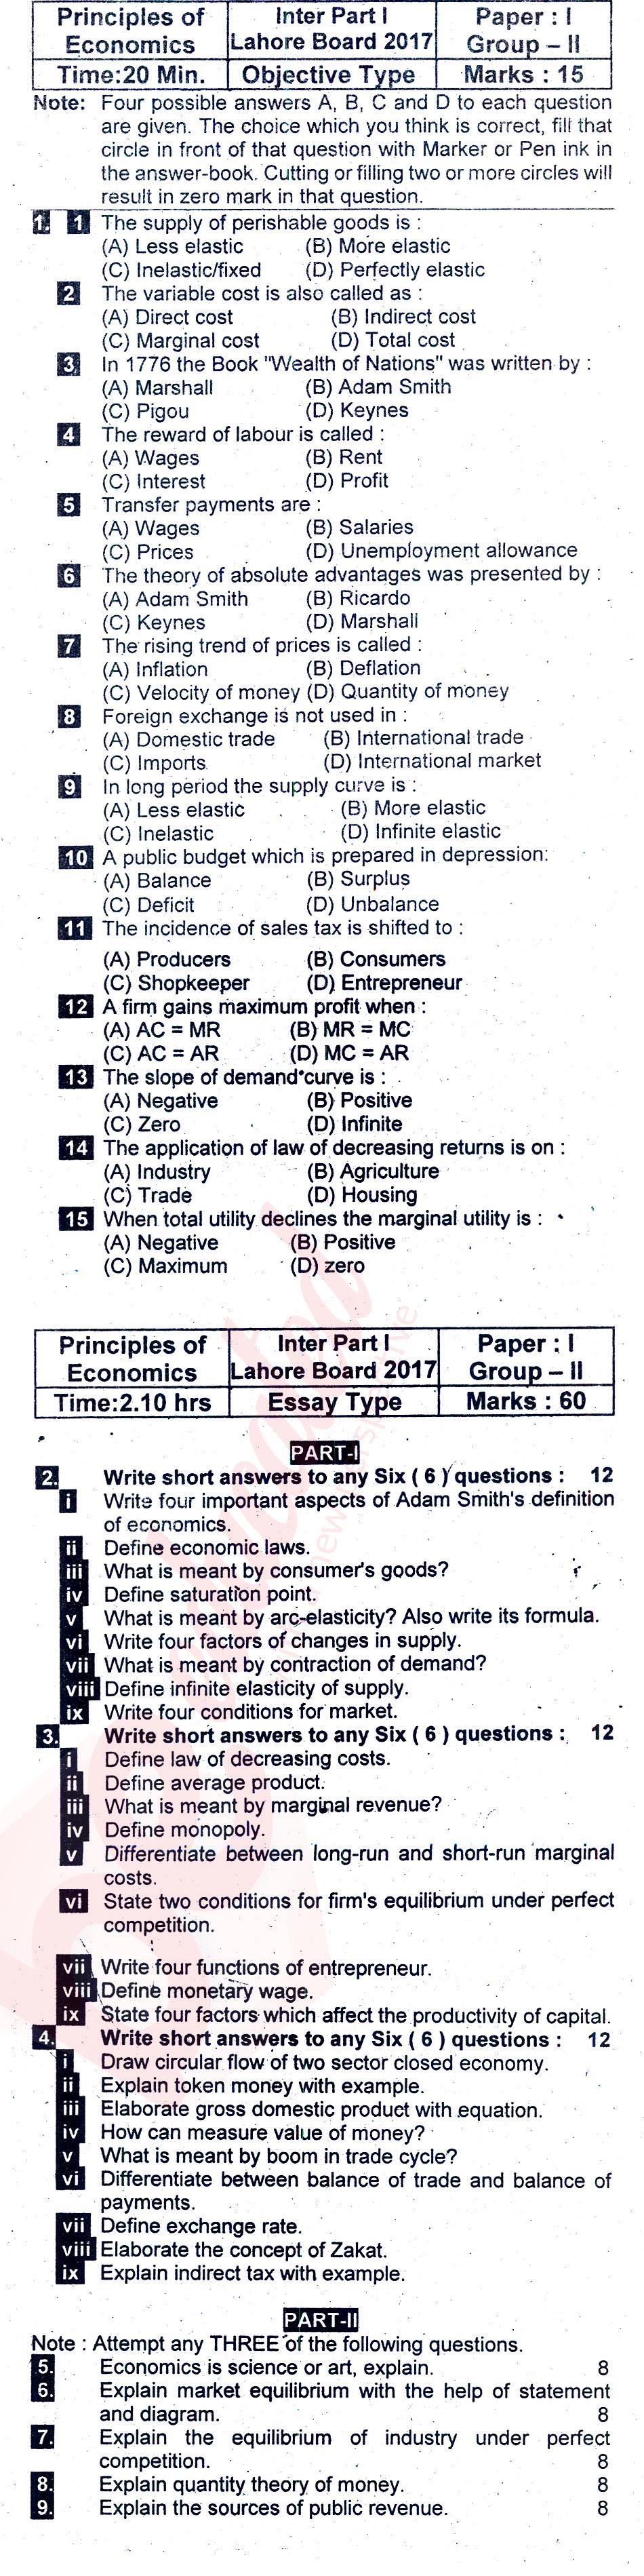 Principles of Economics ICOM Part 1 Past Paper Group 2 BISE Lahore 2017